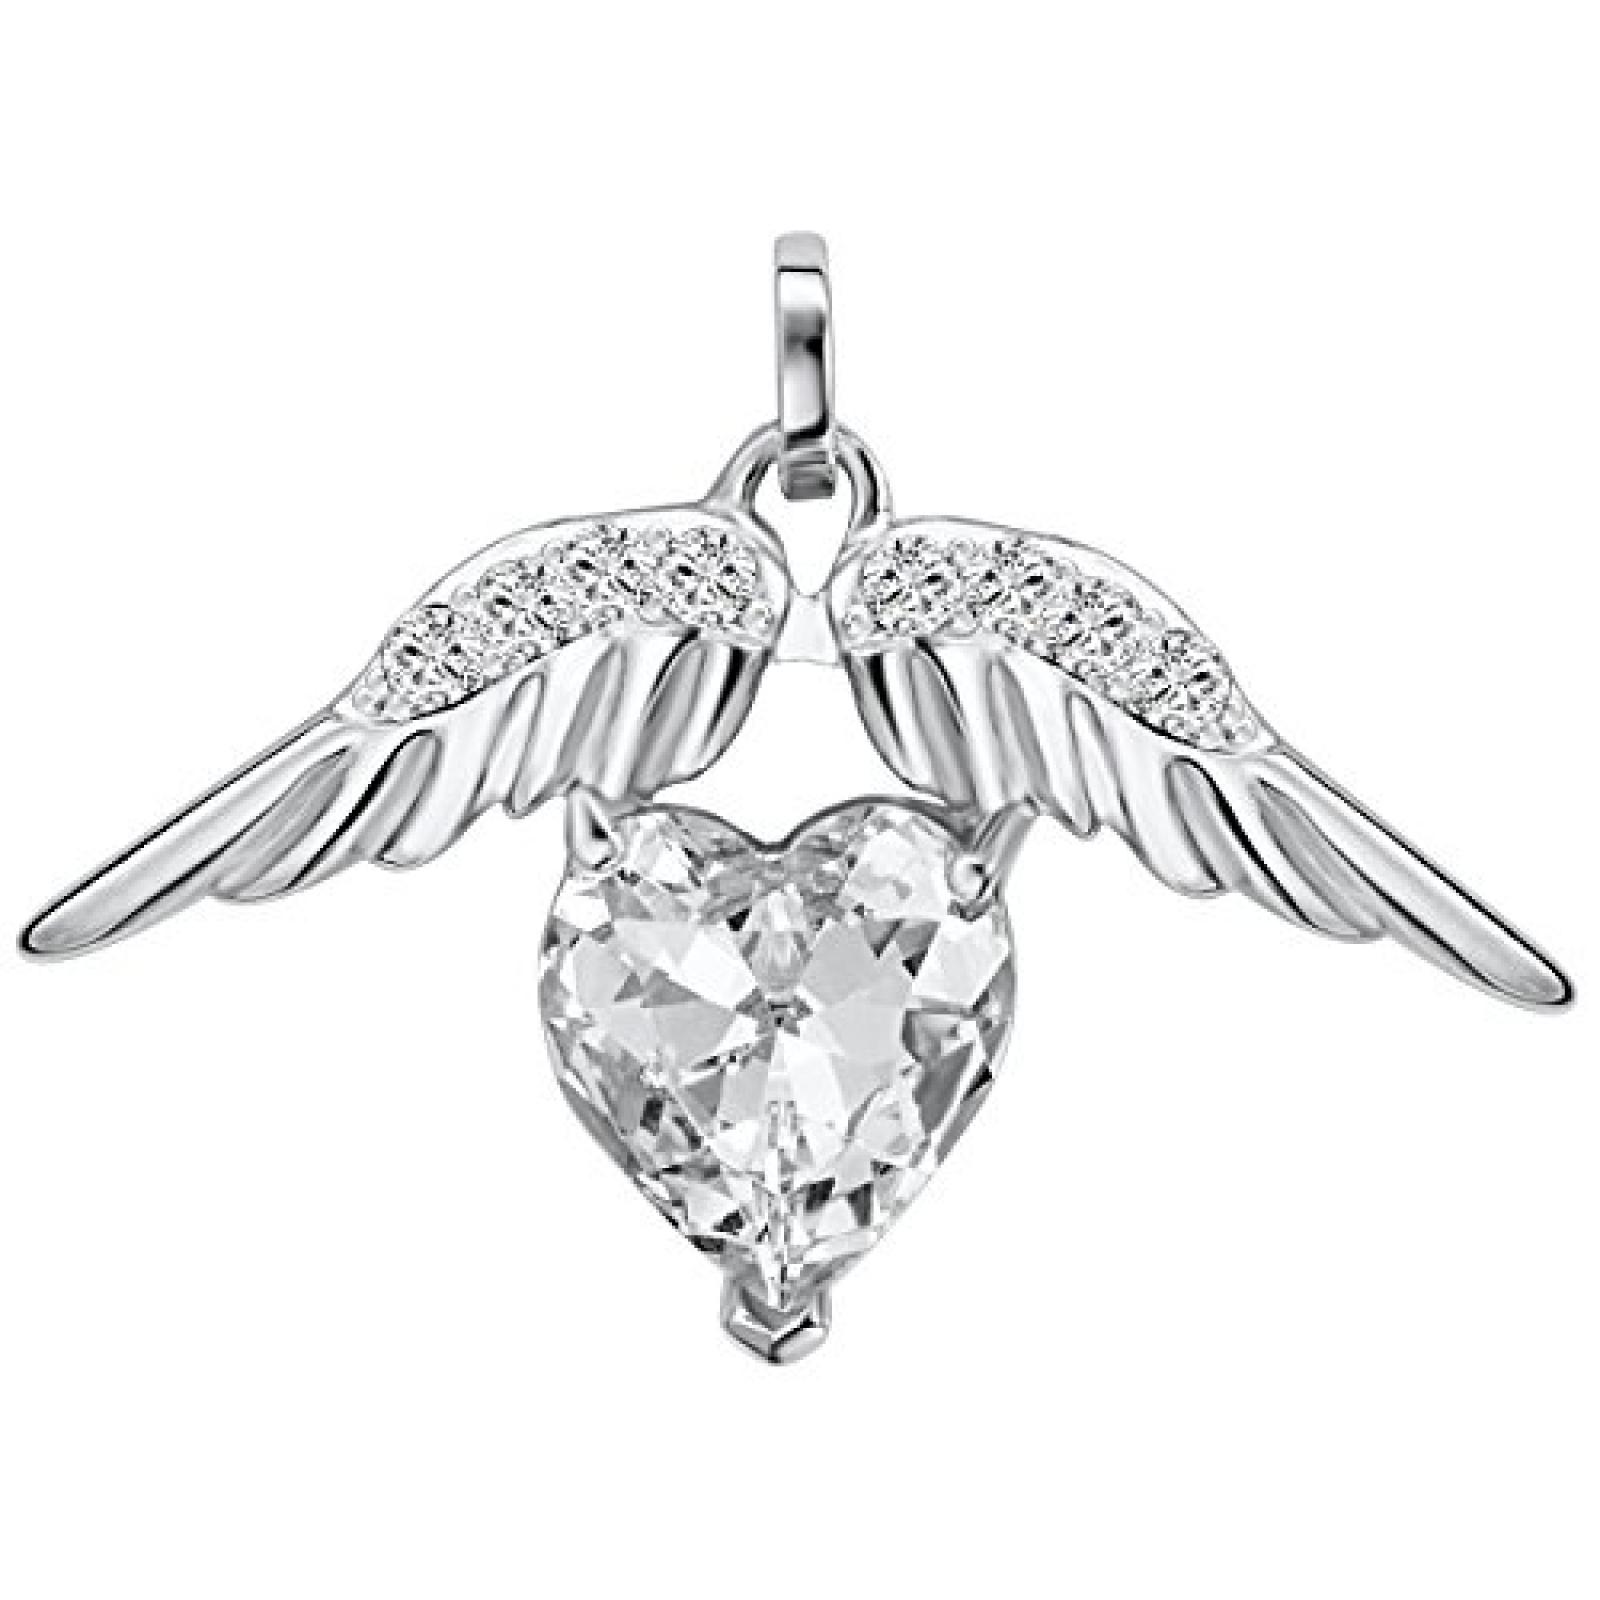 Rafaela Donata Glossy Collection Damen-Anhänger "Flügel" mit original Swarovski Elements Crystal (ohne Kette)  60836046 